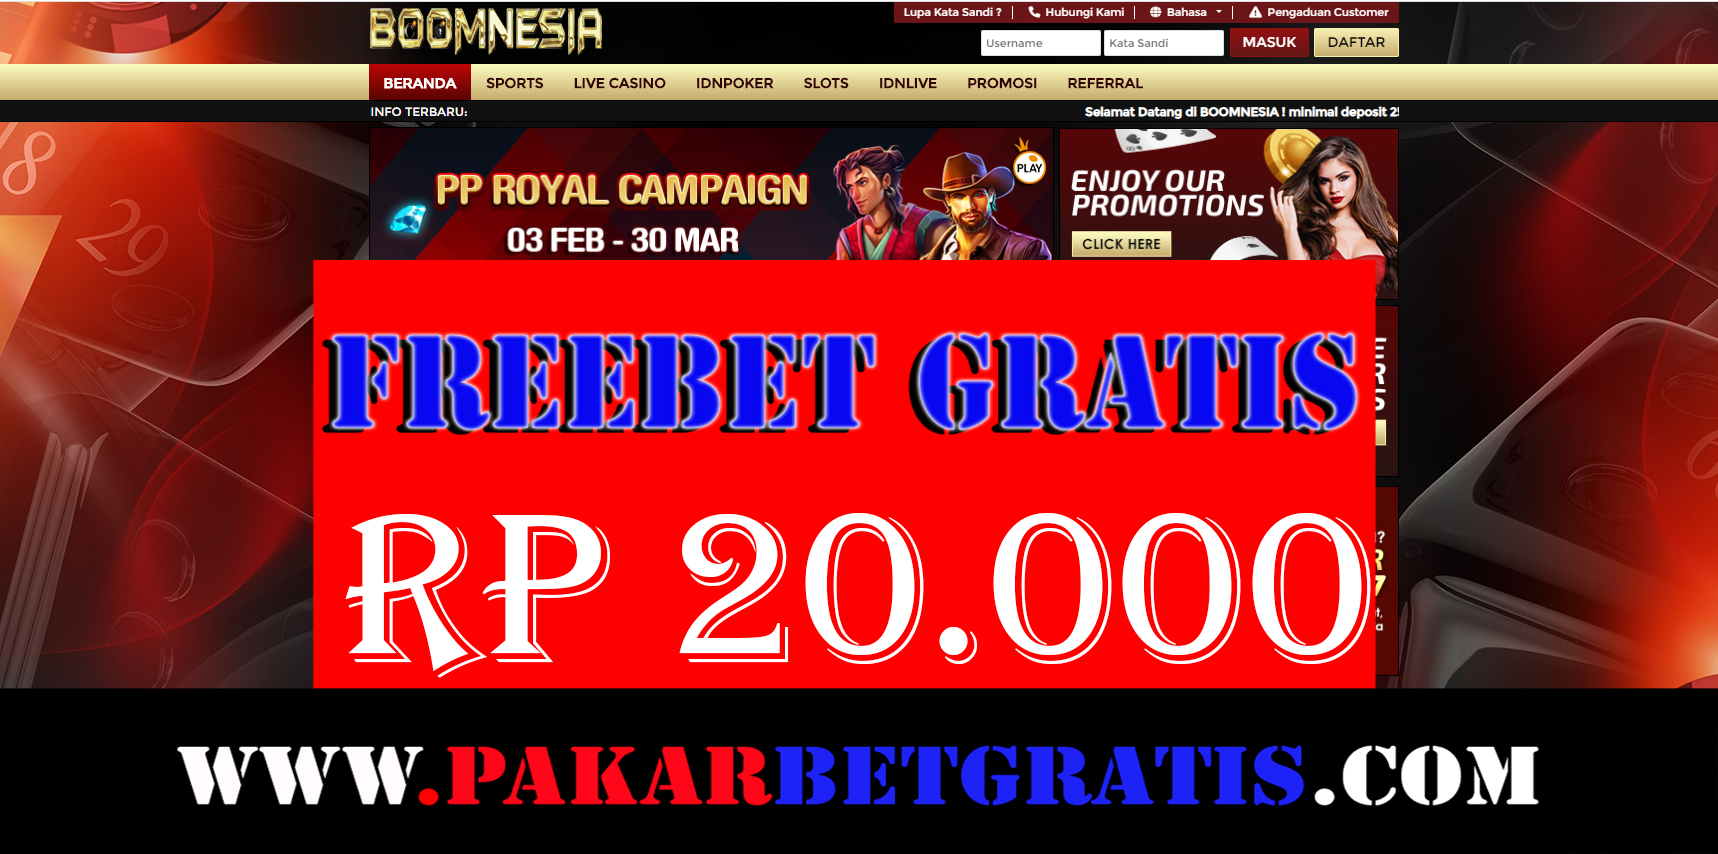 Freebet Gratis Boomnesia Rp 20.000 Tanpa Deposit